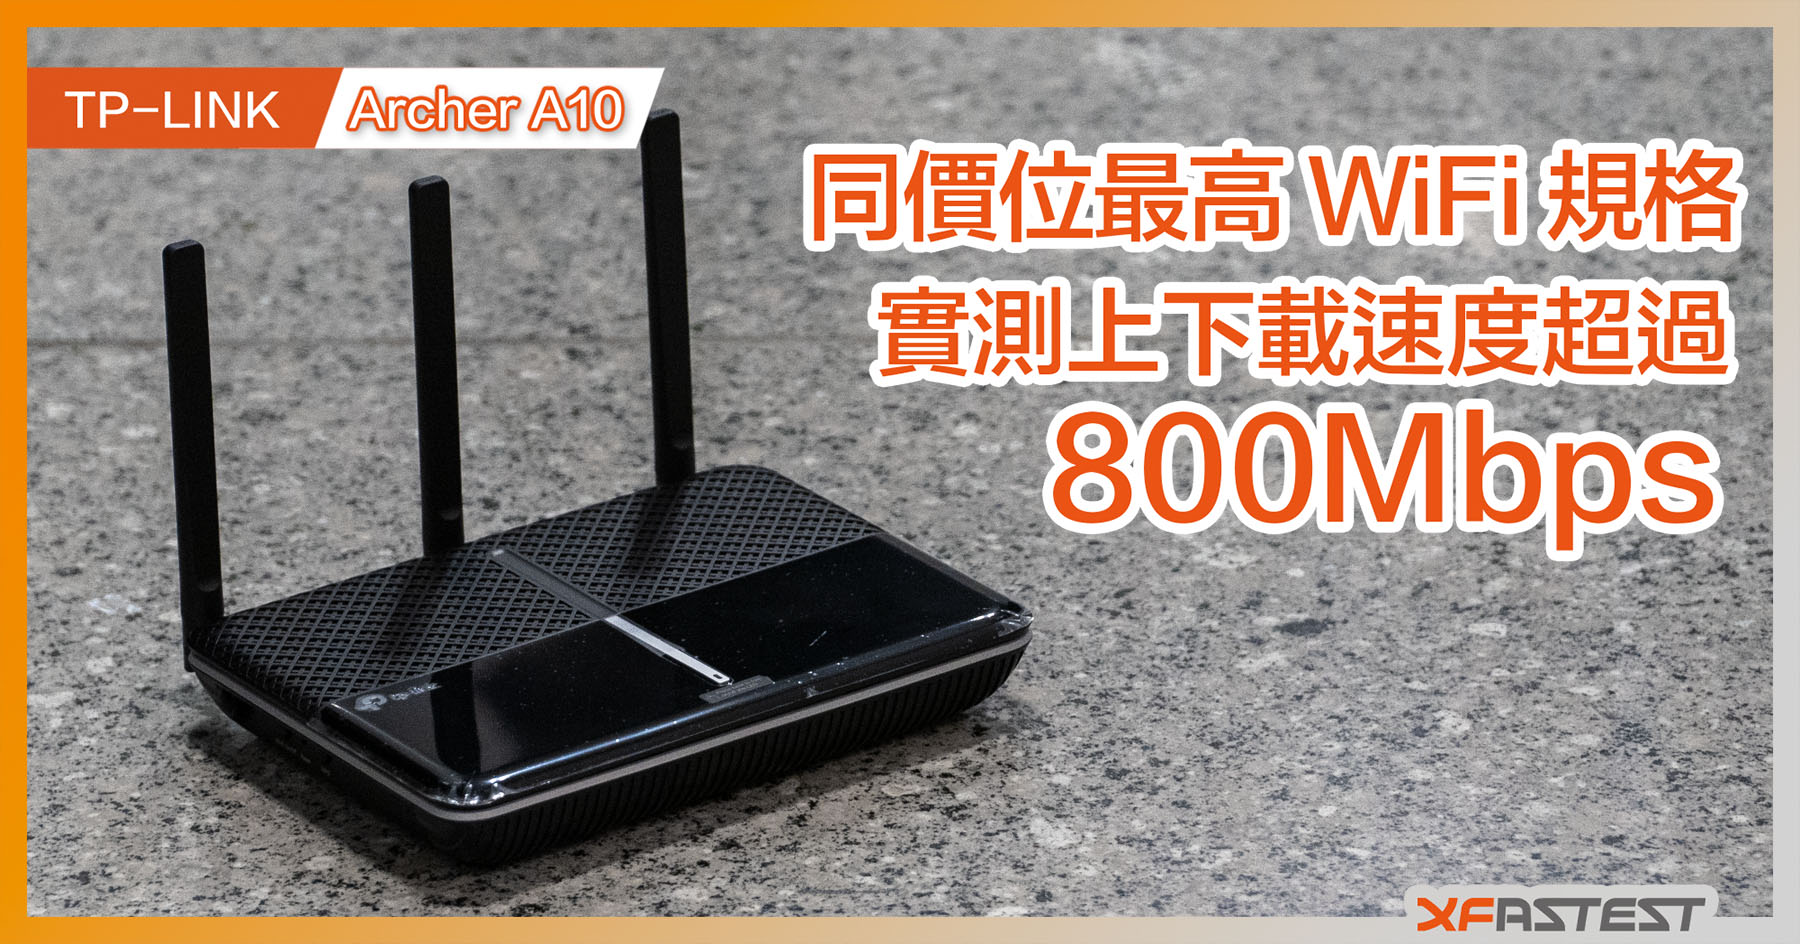 XF 開箱] 市場同級最強規格TP-LINK Archer A10 無線路由器- XFastest Hong Kong